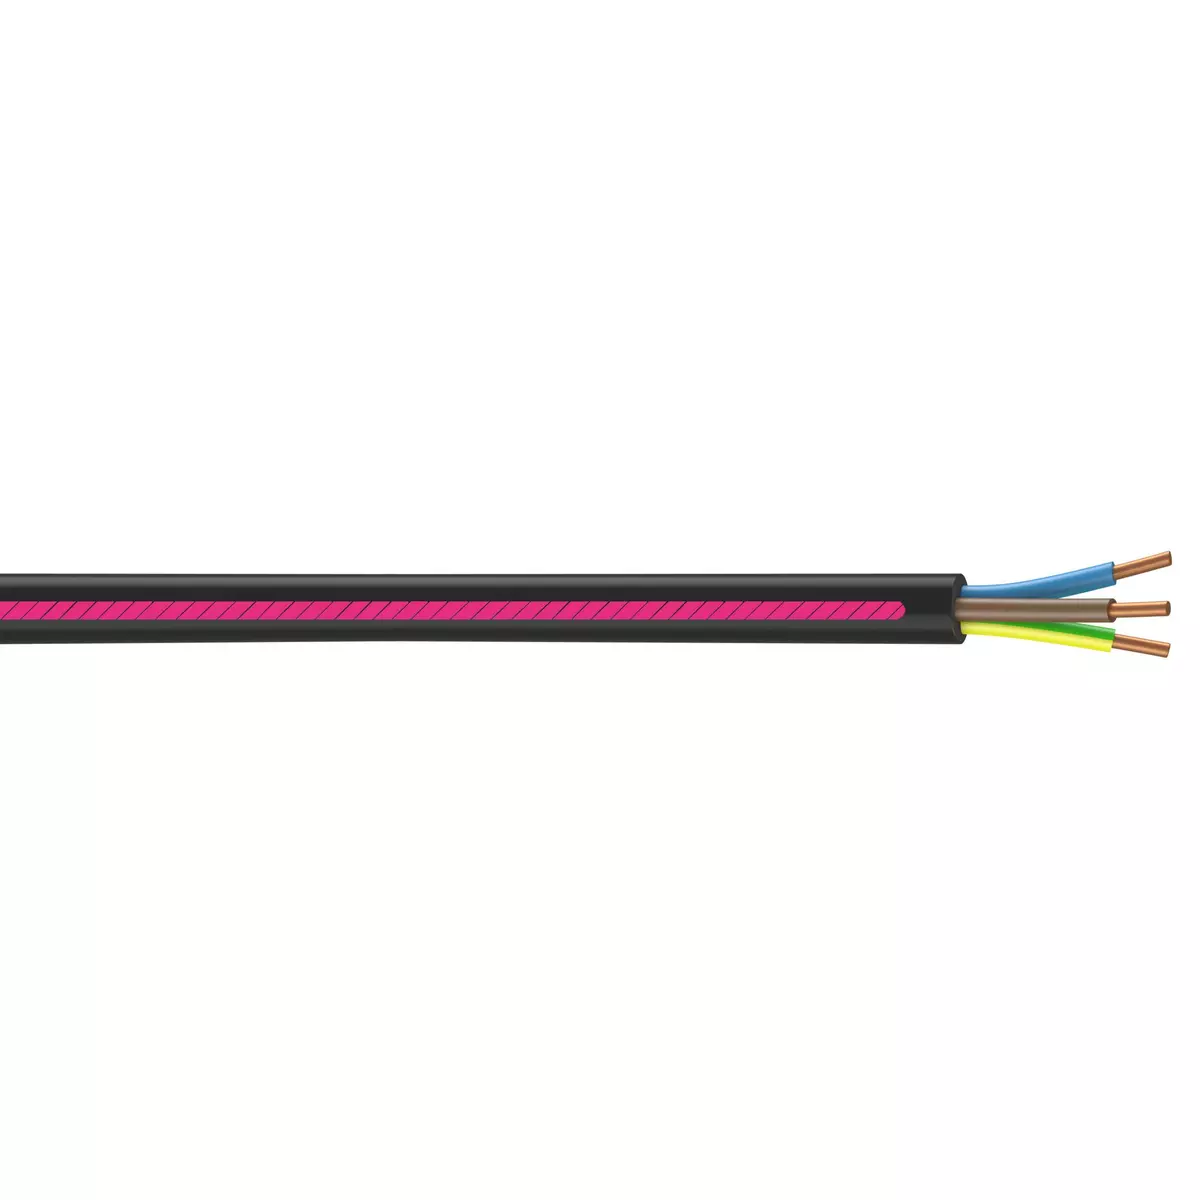 CENTRALE BRICO Câble électrique 3 G 1.5 mm² u1000r2v L.15 m, noir